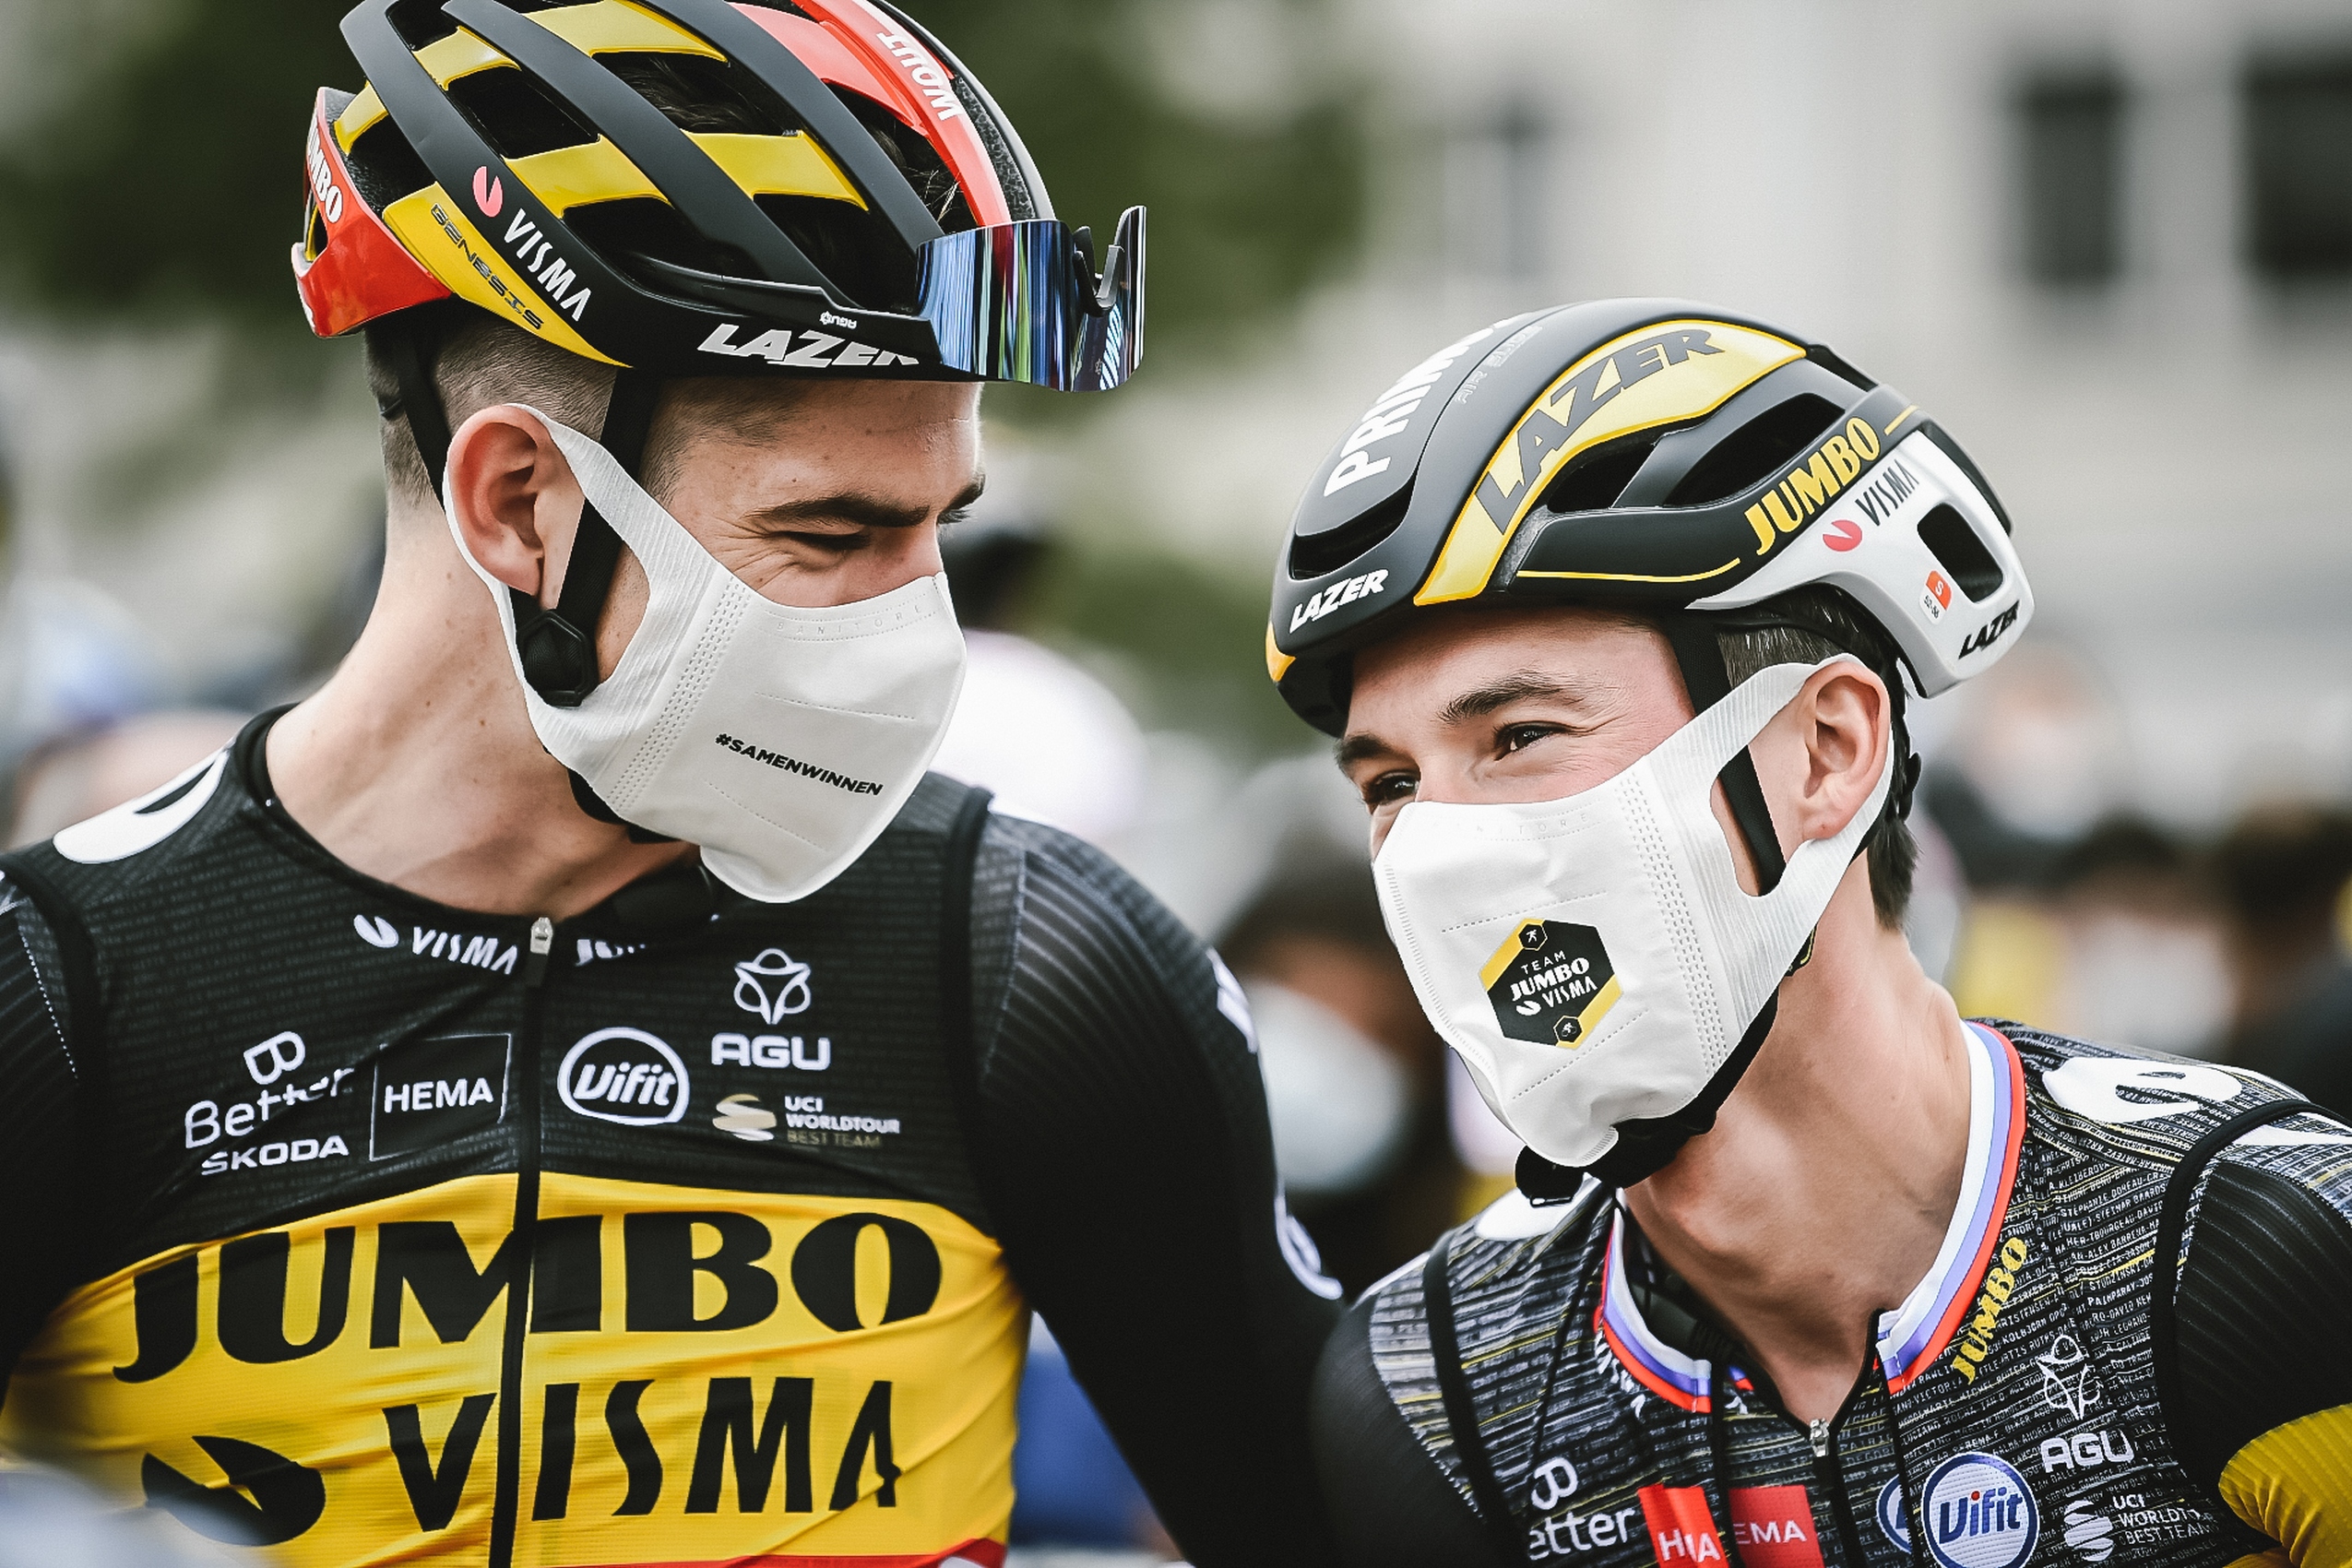 Ronde van Vlaanderen 2022. Wout van Aert nie wystartuje